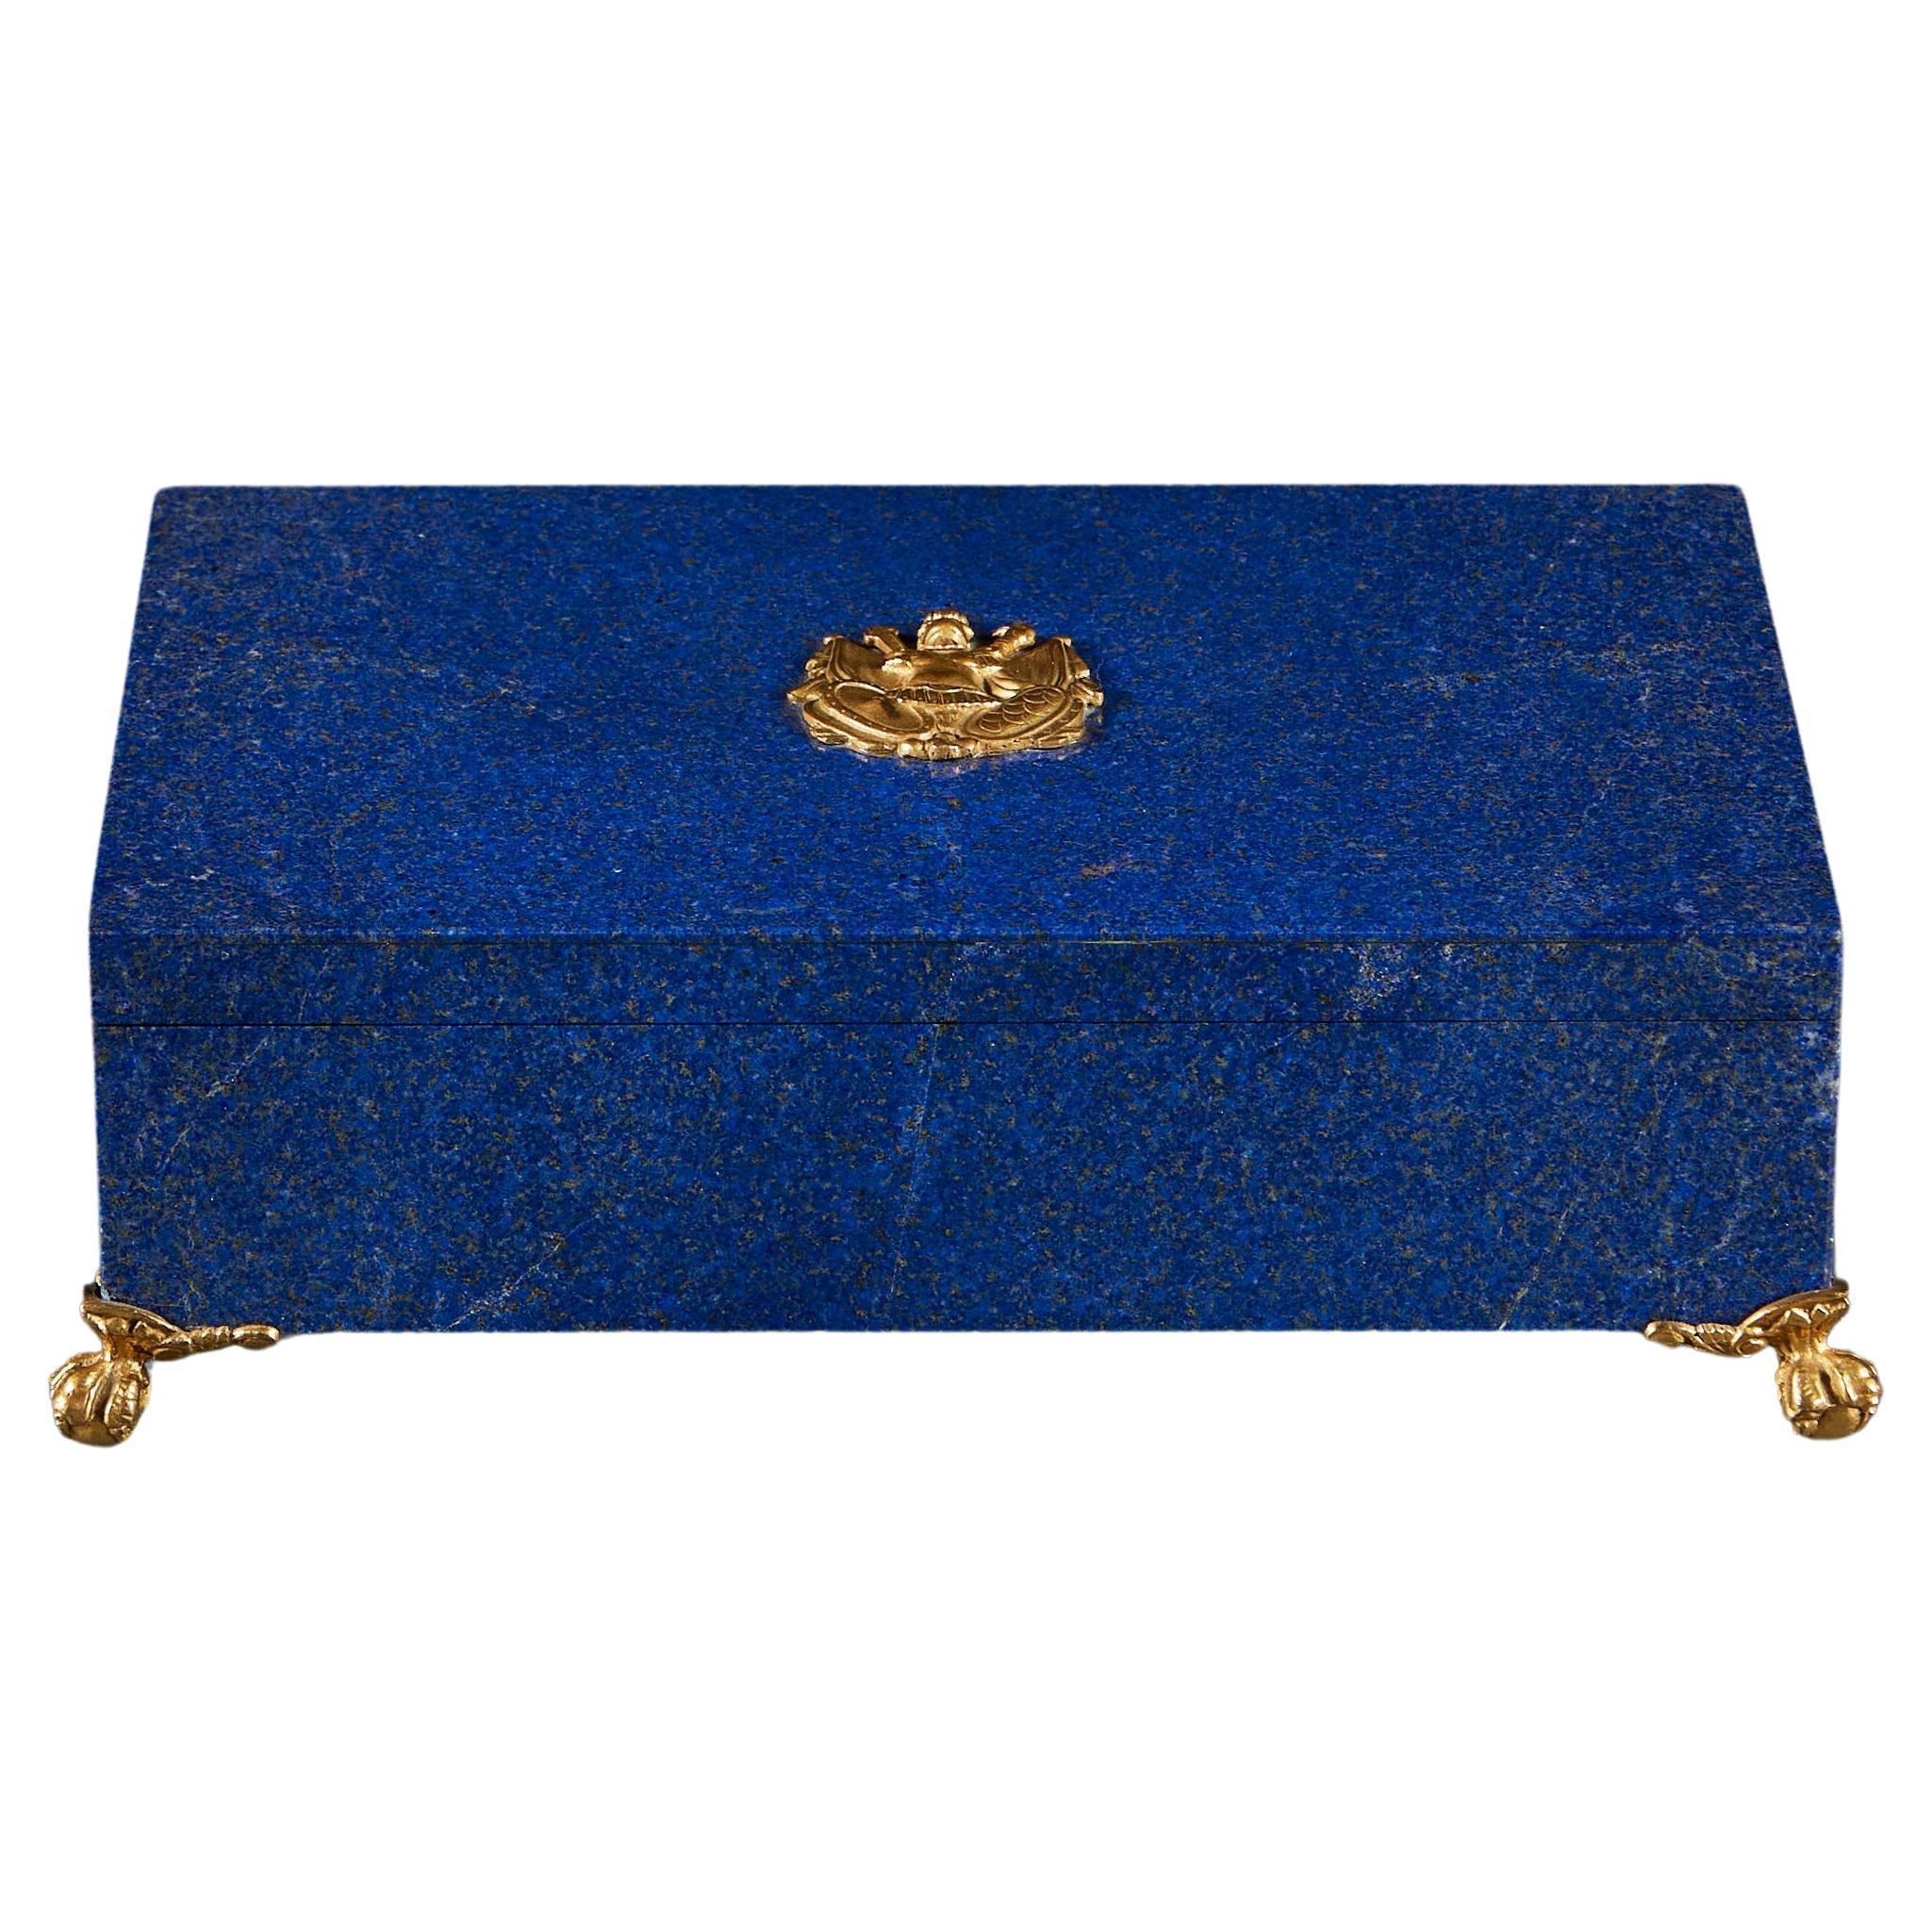 An Art Deco Lapiz Lazuli and gilt bronze casket